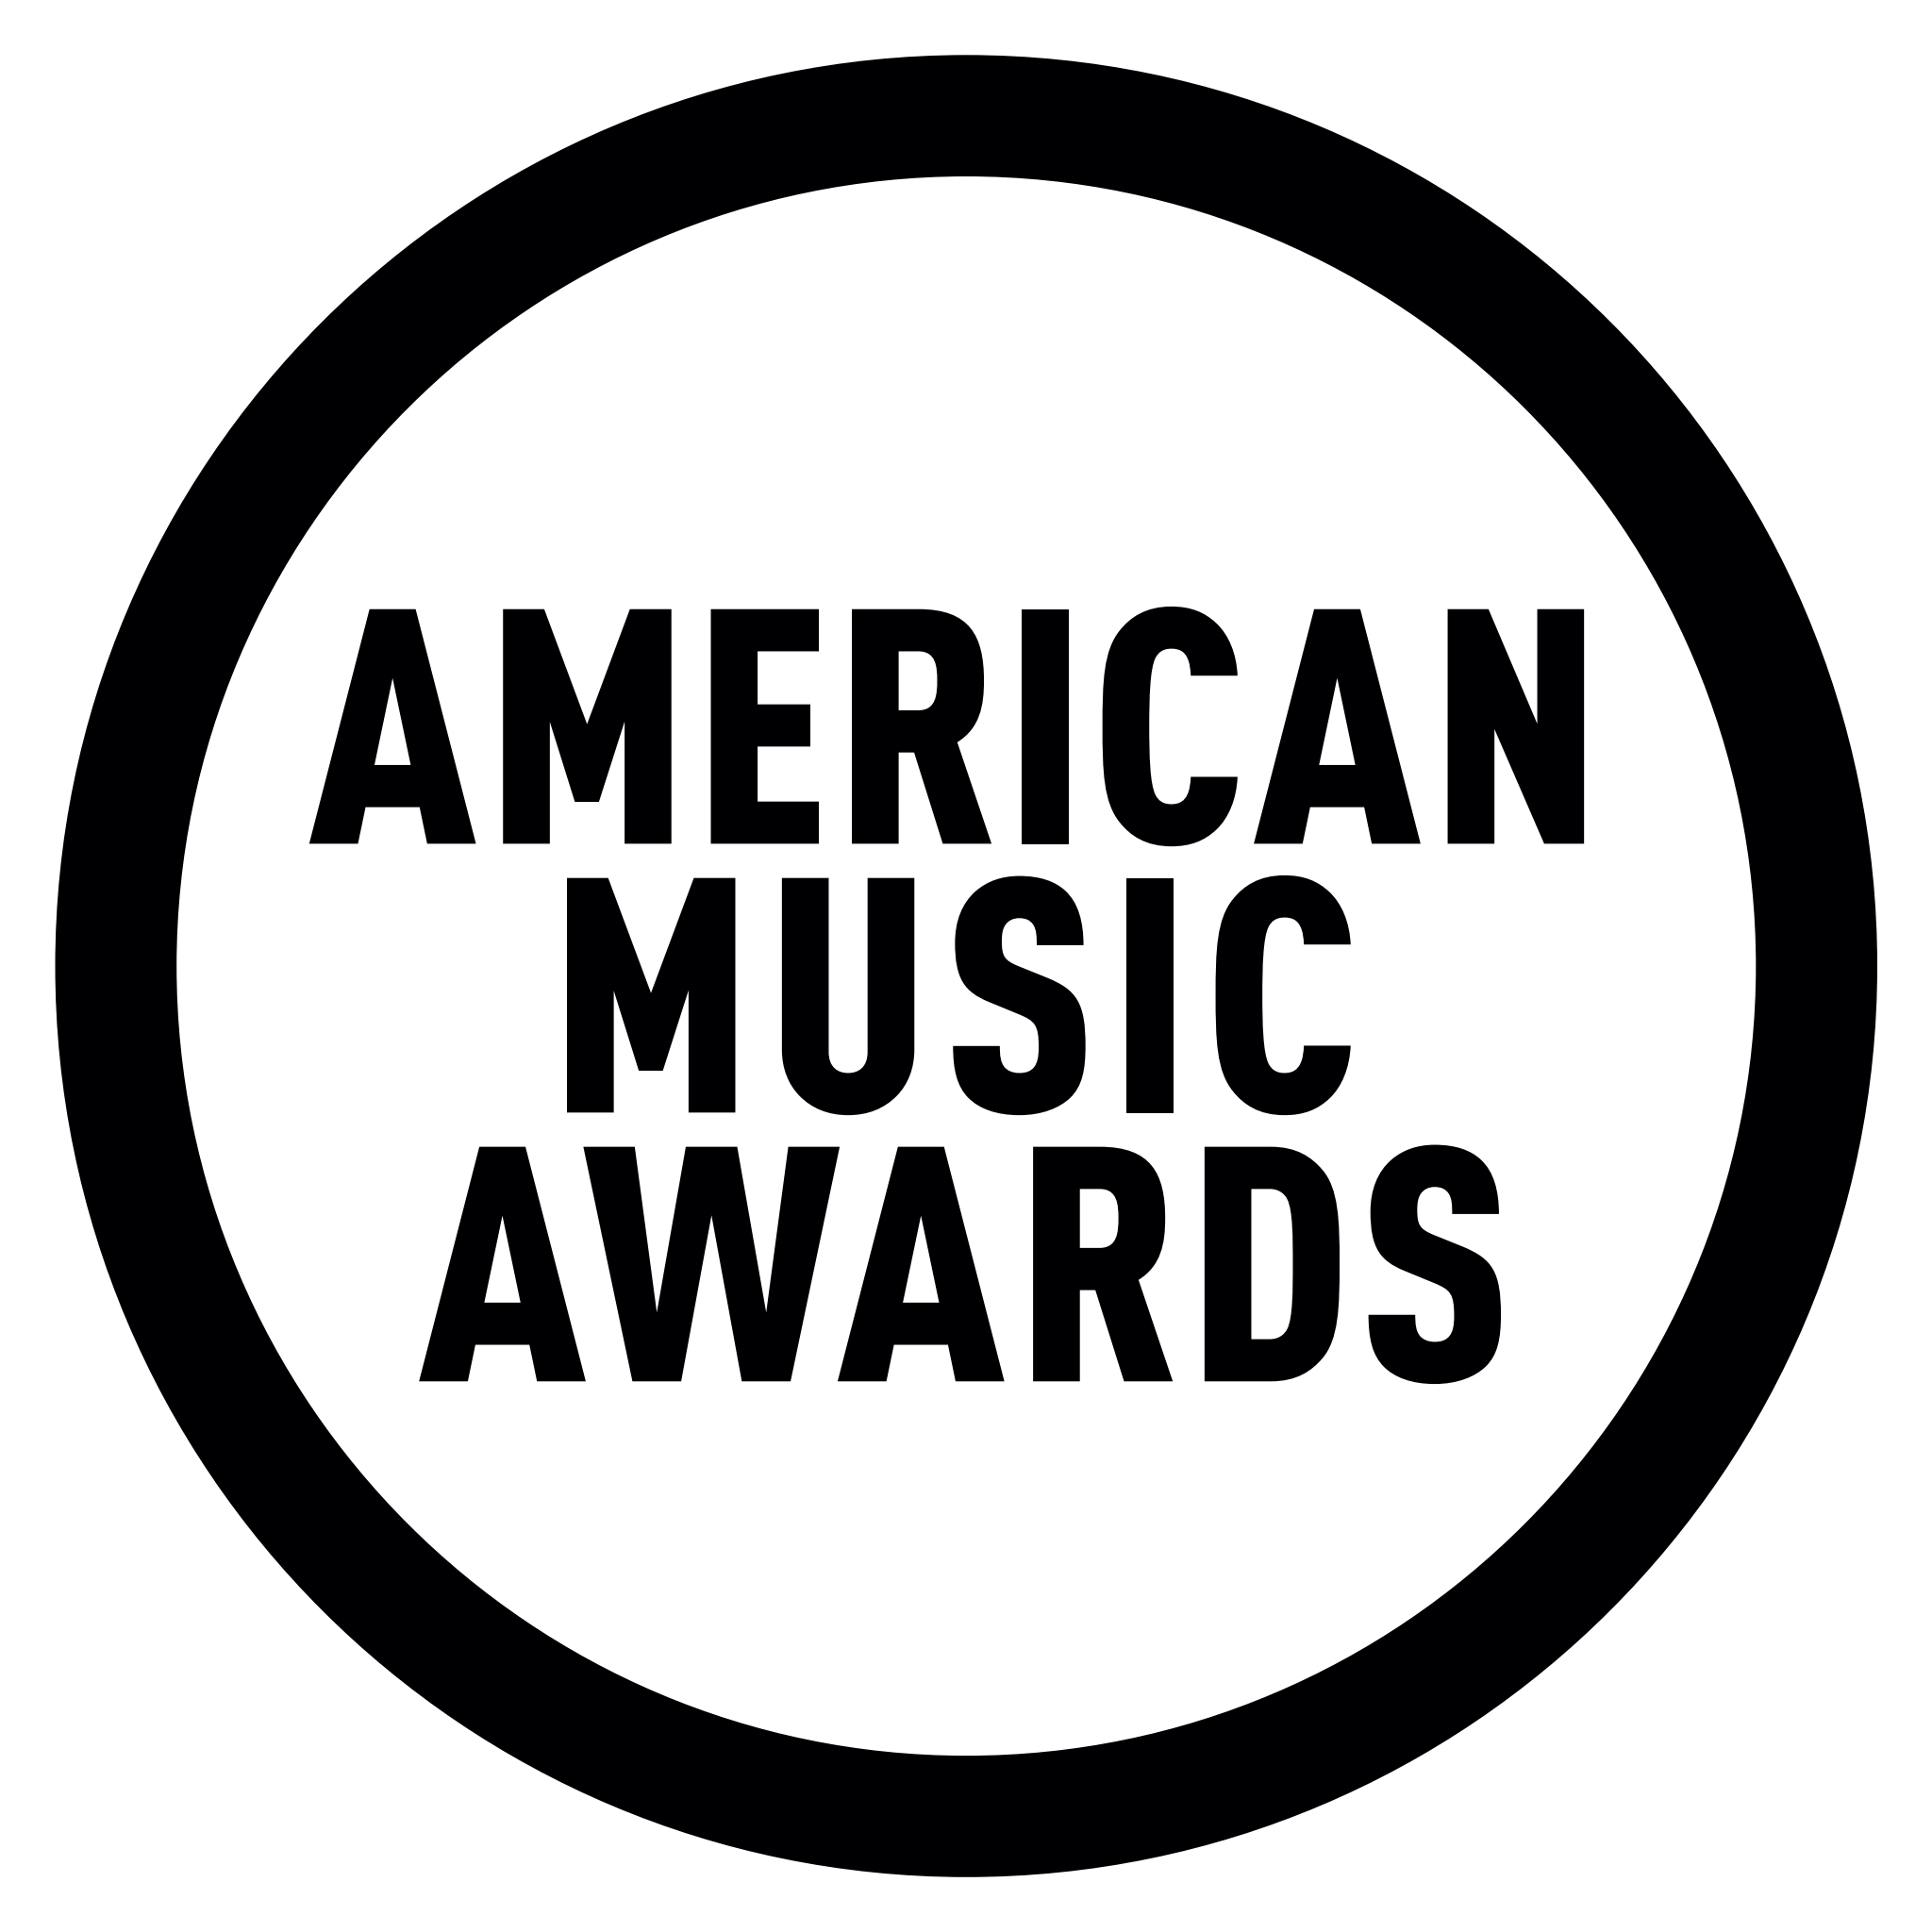 “2021 AMERICAN MUSIC AWARDS” Full List of Winners TVMusic Network